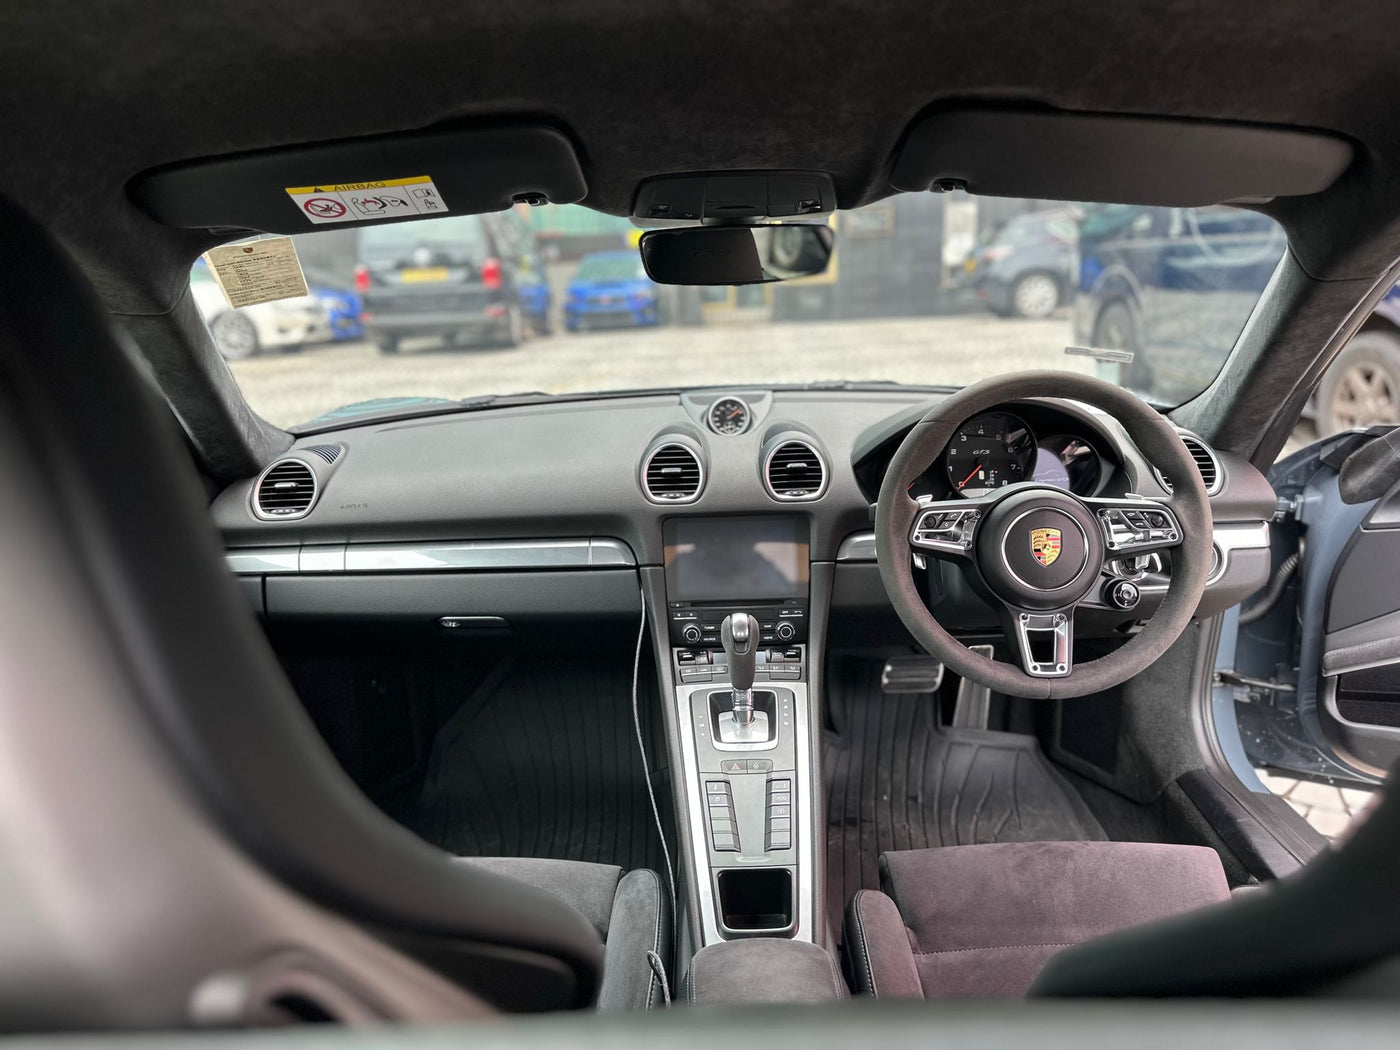 PORSCHE 718 Cayman GTS 2018